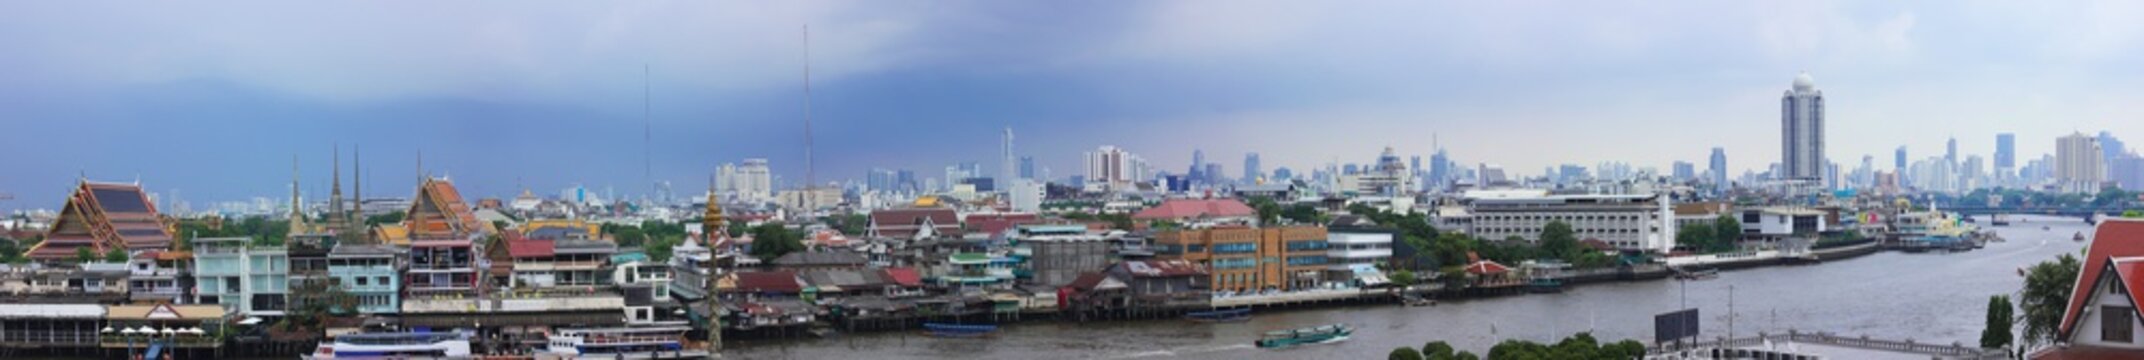 Panoramic image of Bangkok showing the Chao Phraya River.